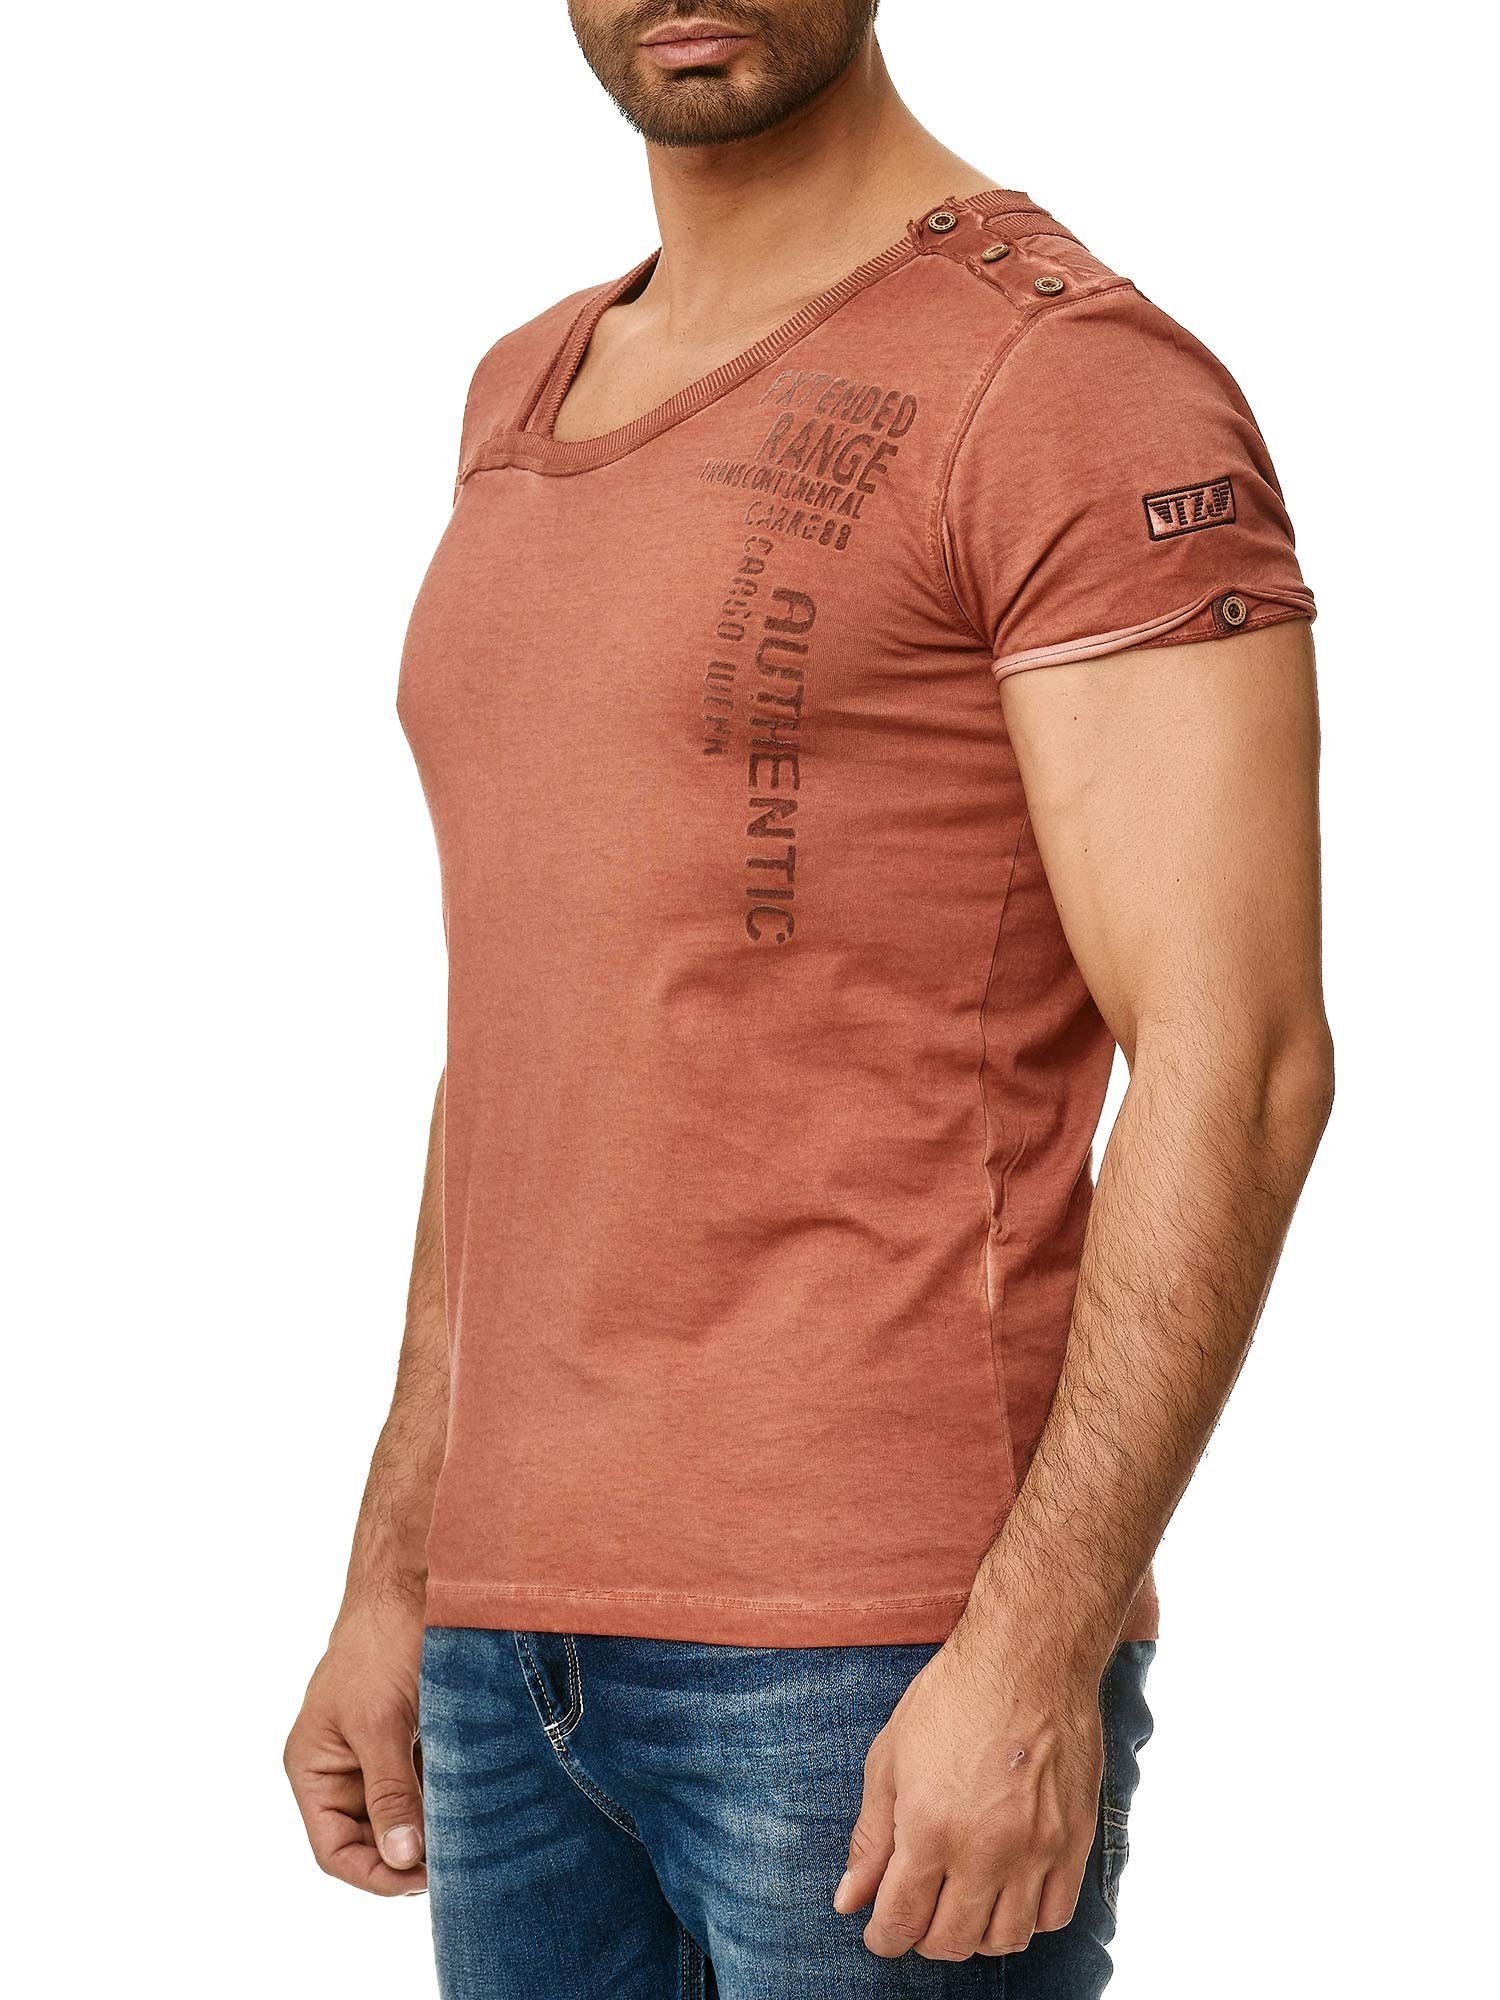 Tazzio T-Shirt 4022 in trendiger Ölwaschung mit stylischem Kragen und Knopfleiste an der Schulter bordeaux